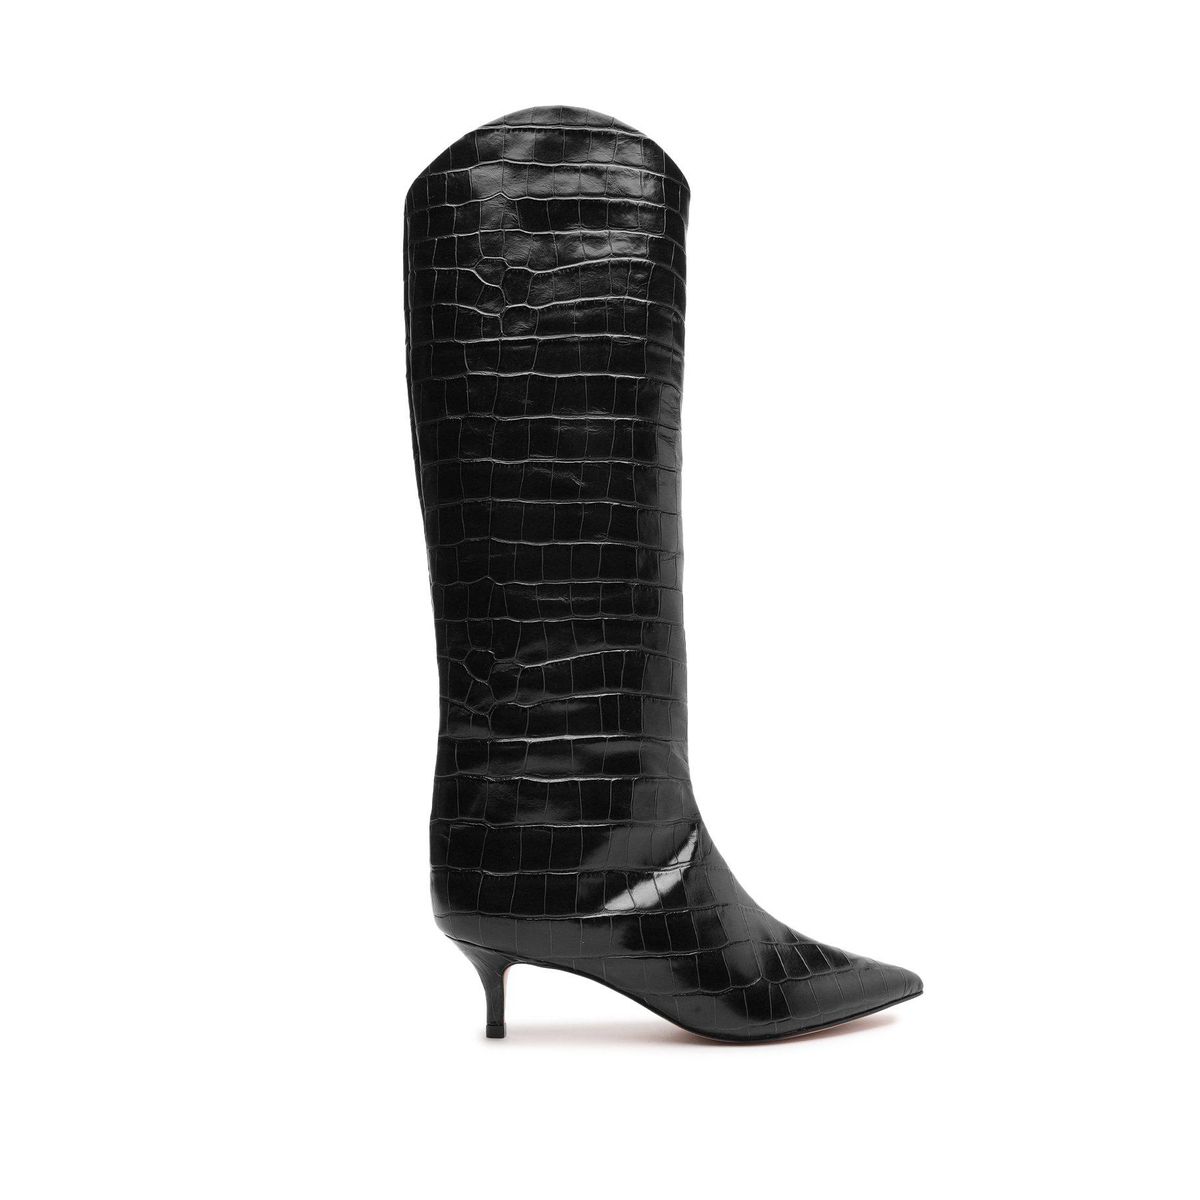 schutz maryana lo crocodile embossed leather boot